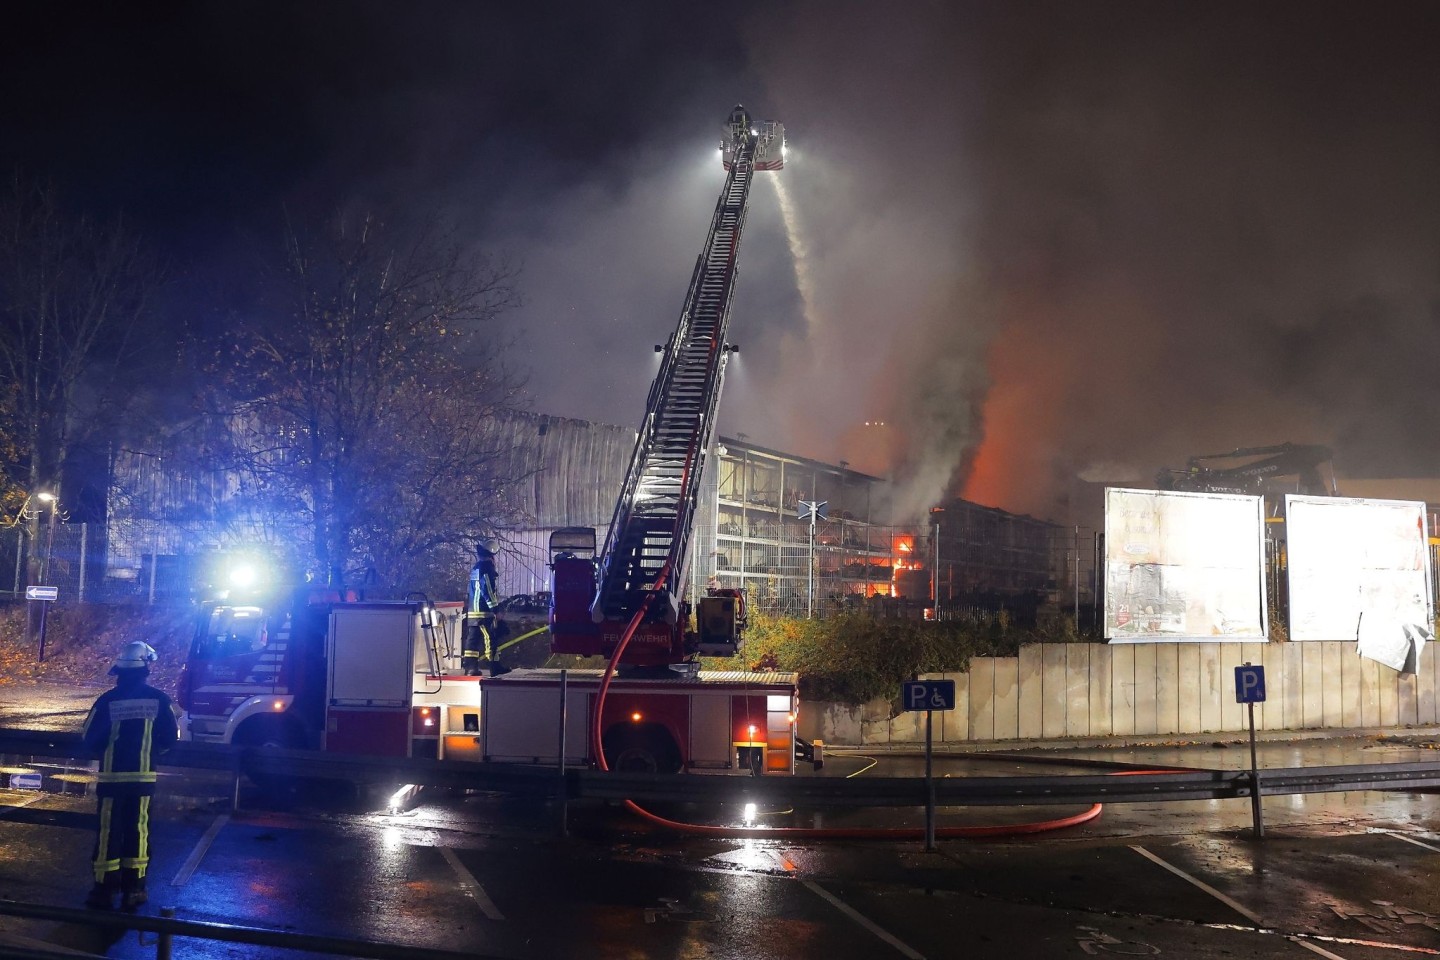 Die Gewerbehalle liegt unmittelbar neben der Autobahn 40 - aufgrund der starken Rauch- und Flammenentwicklung wurde die Straße in Fahrtrichtung Dortmund gesperrt.